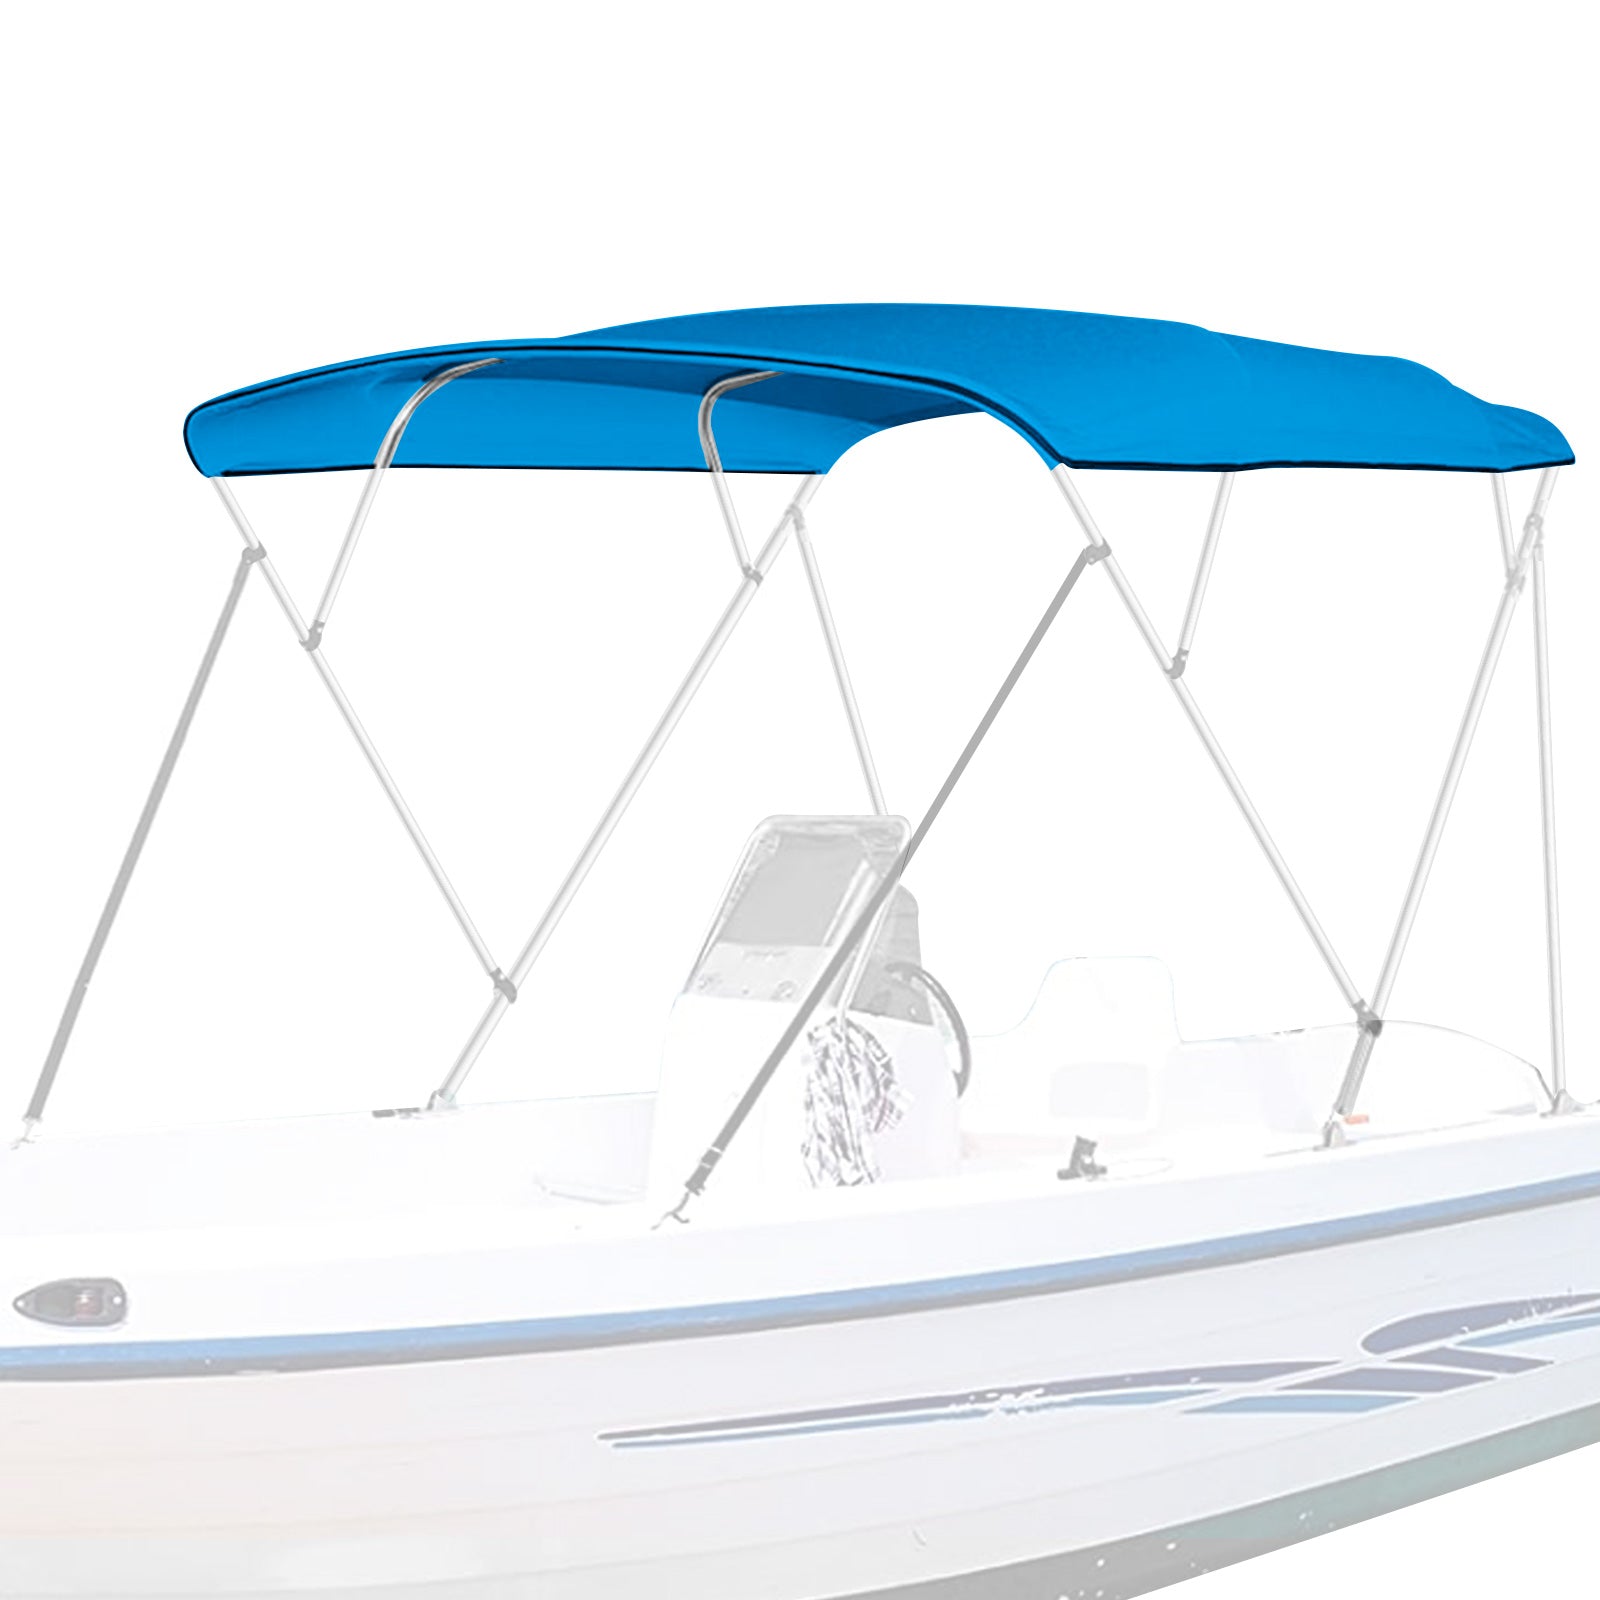 Boat Bimini Top | 4 Bow Pontoon Bimini Boat Tops Replacement